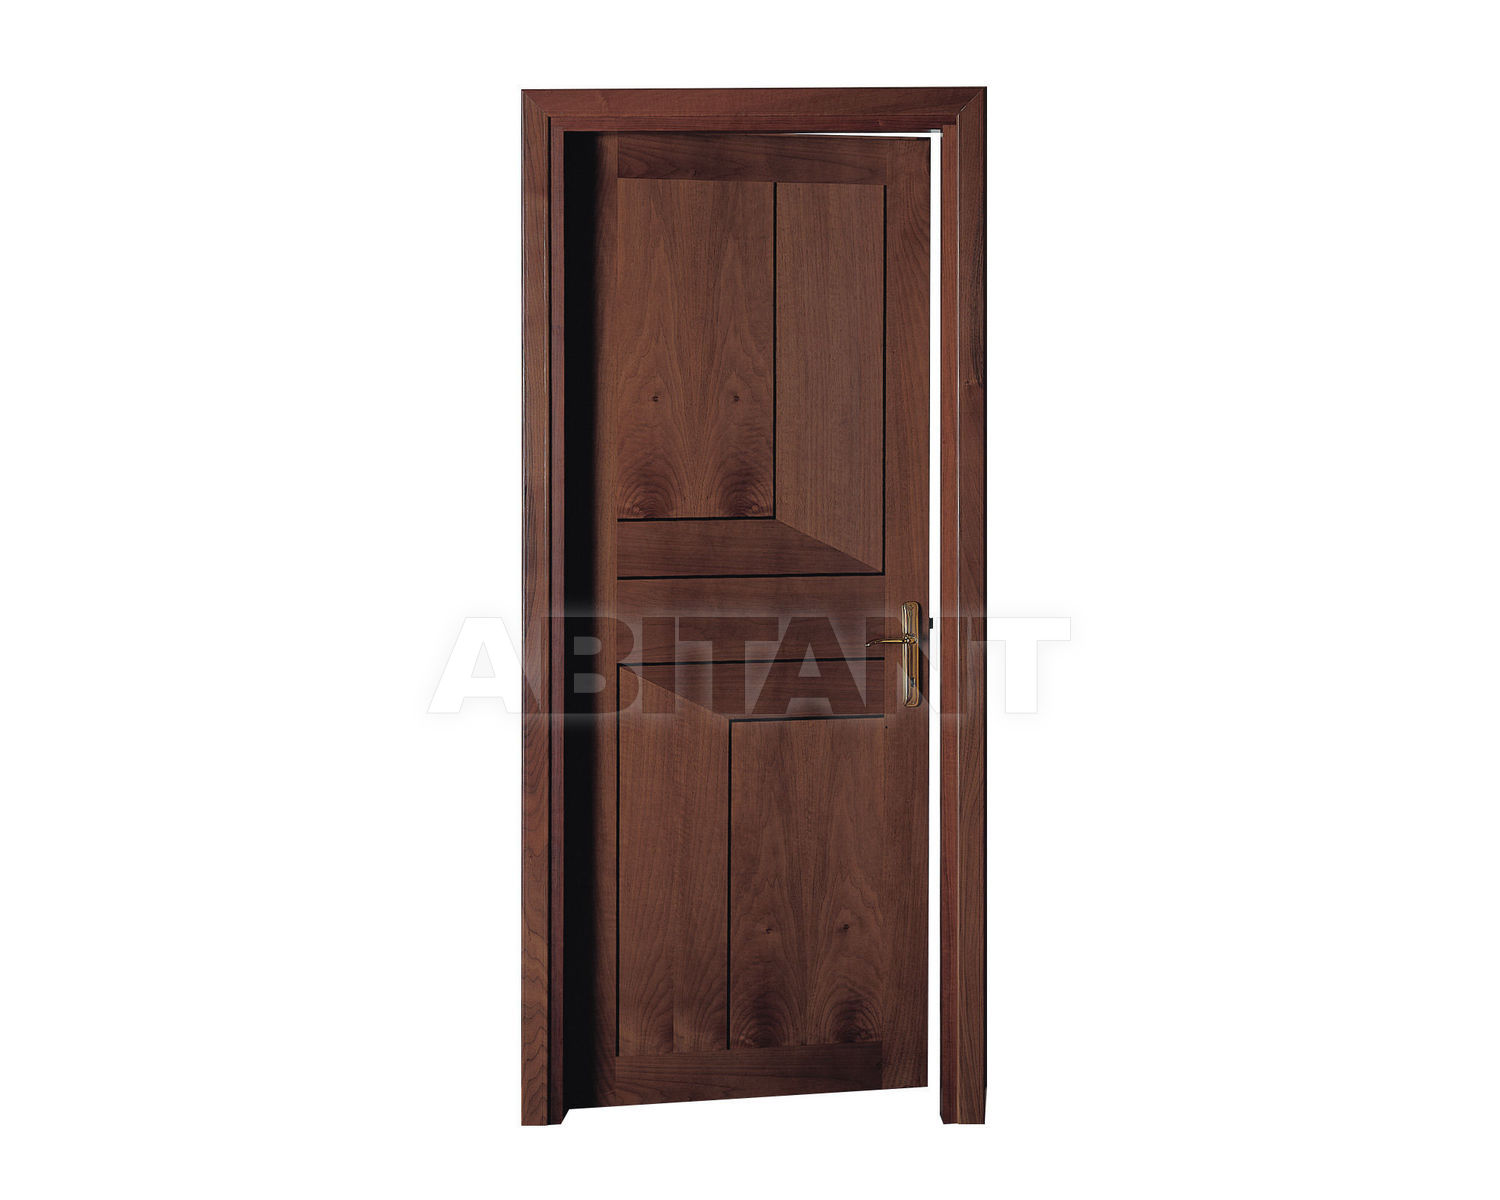 Купить Дверь деревянная Geronazzo F.lli snc Porte 50/FD